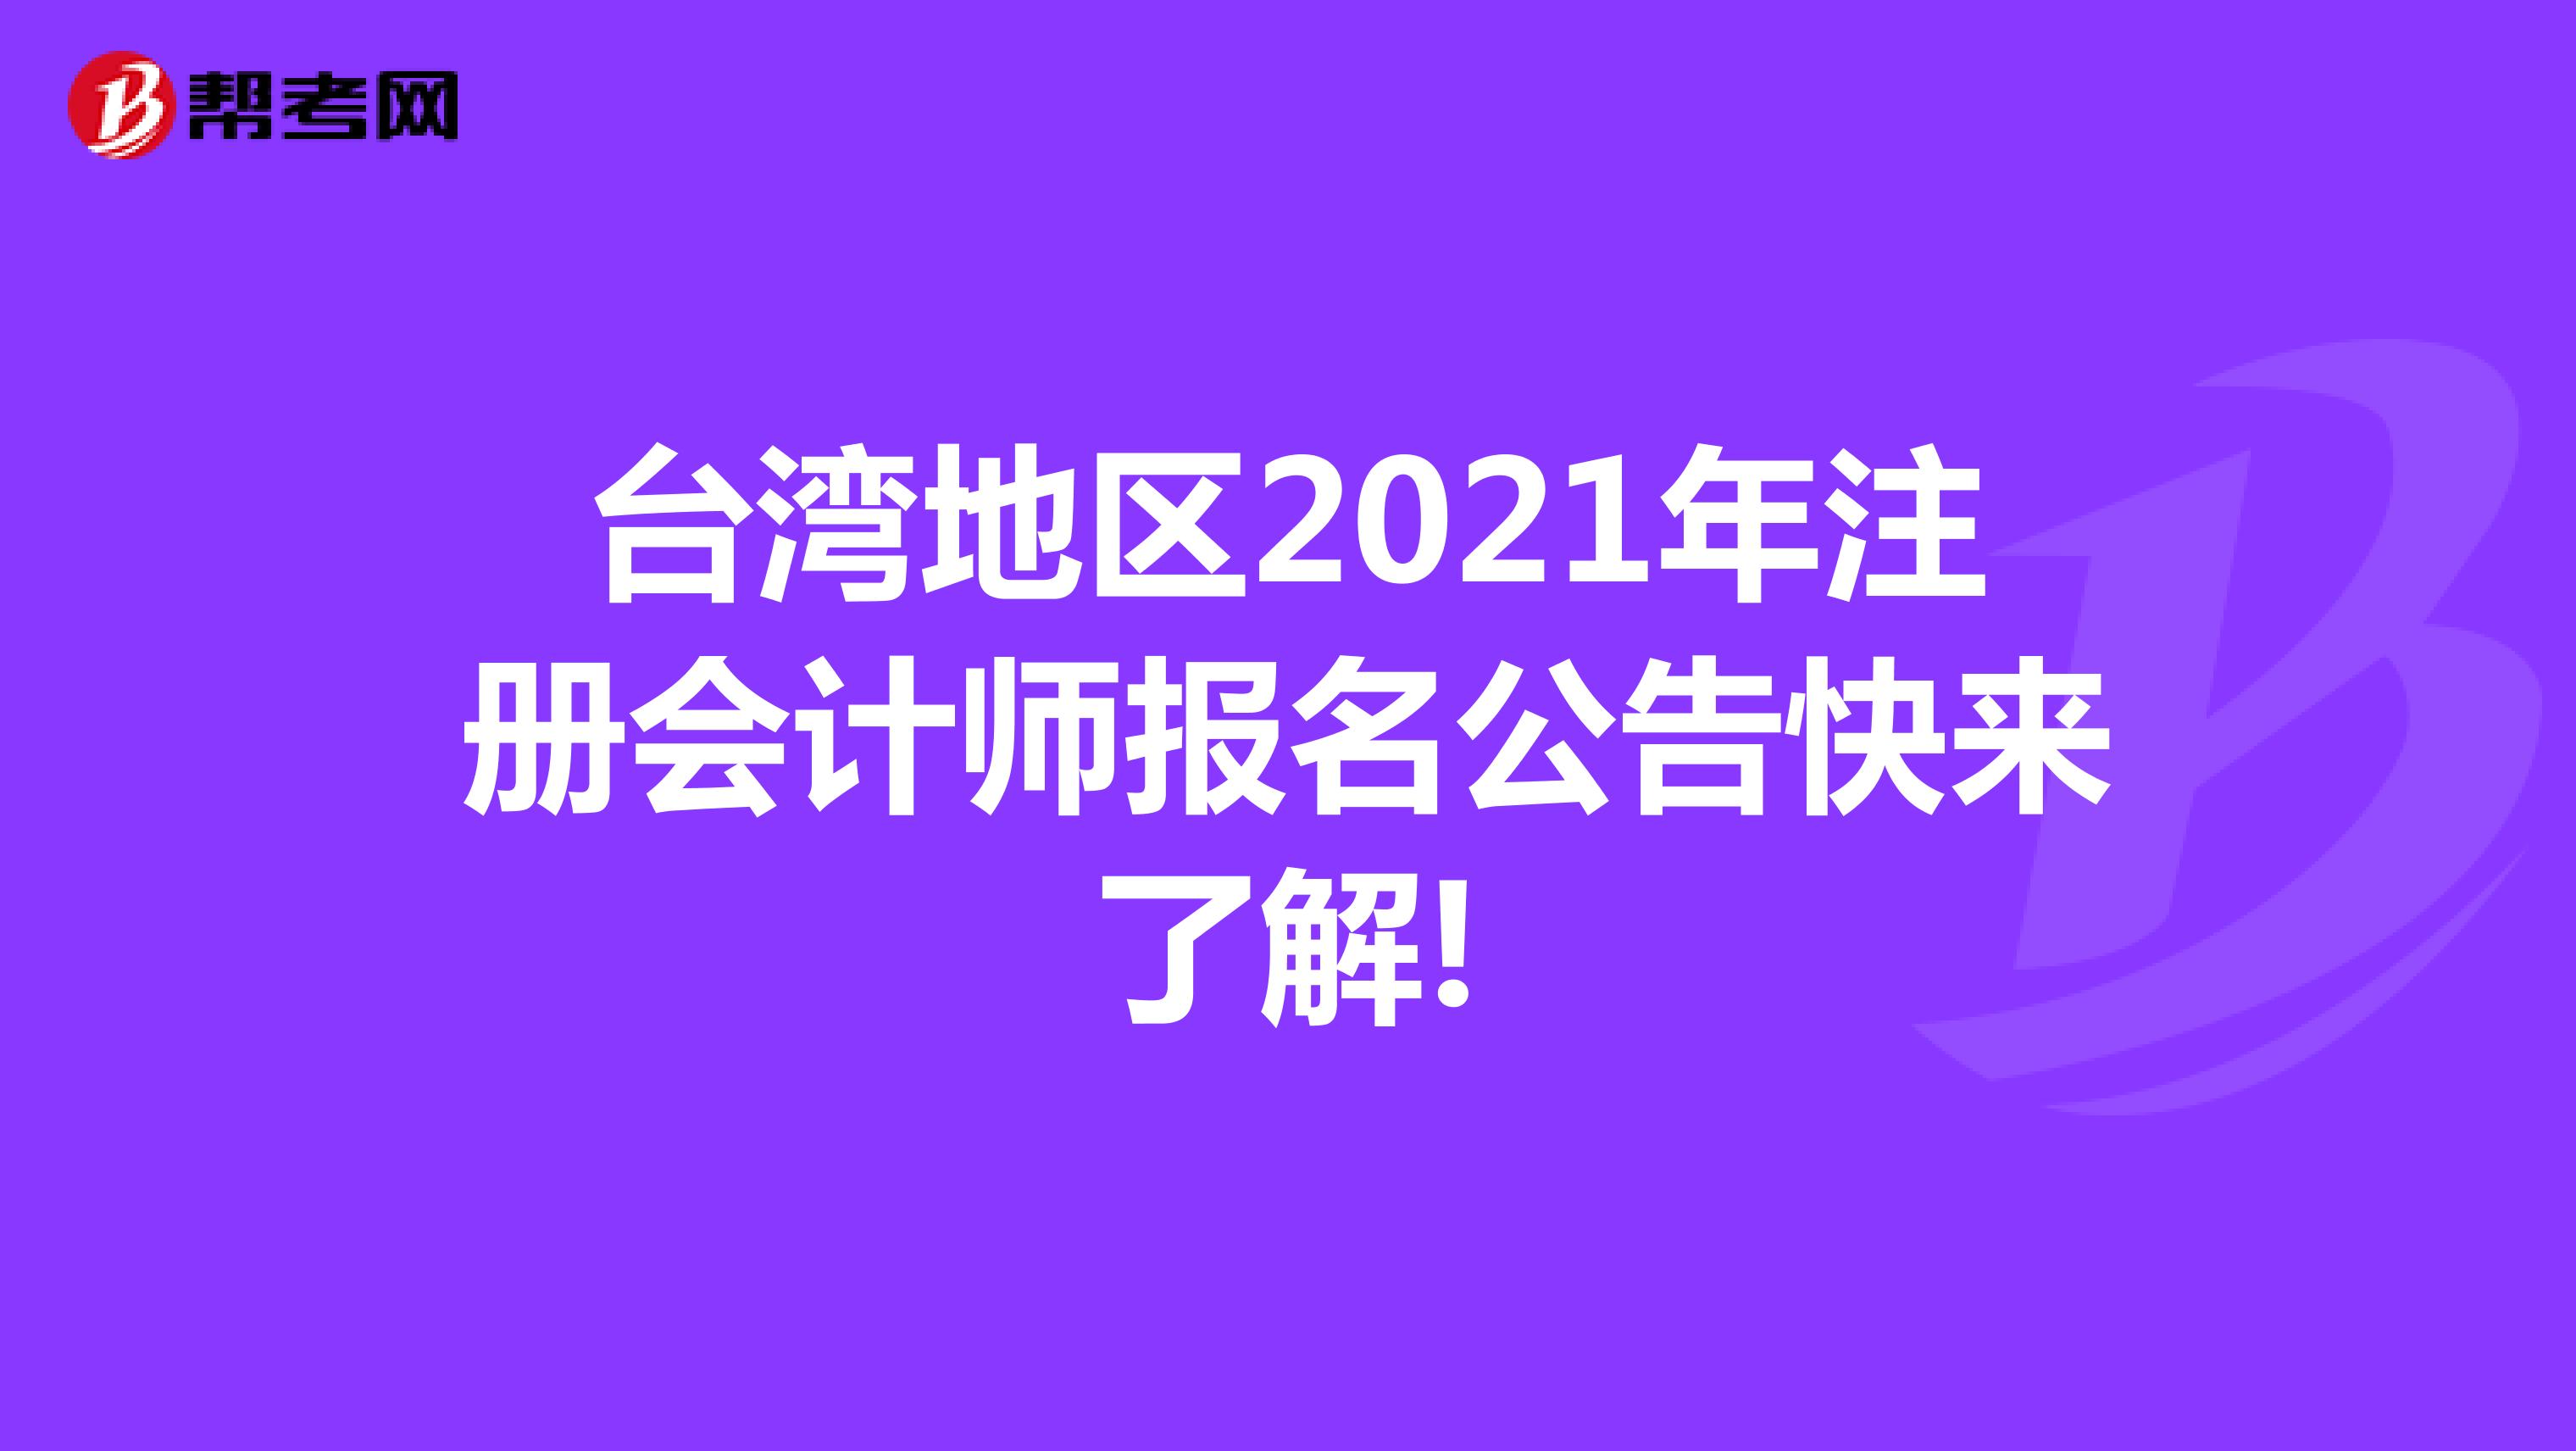 台湾地区2021年注册会计师报名公告快来了解!